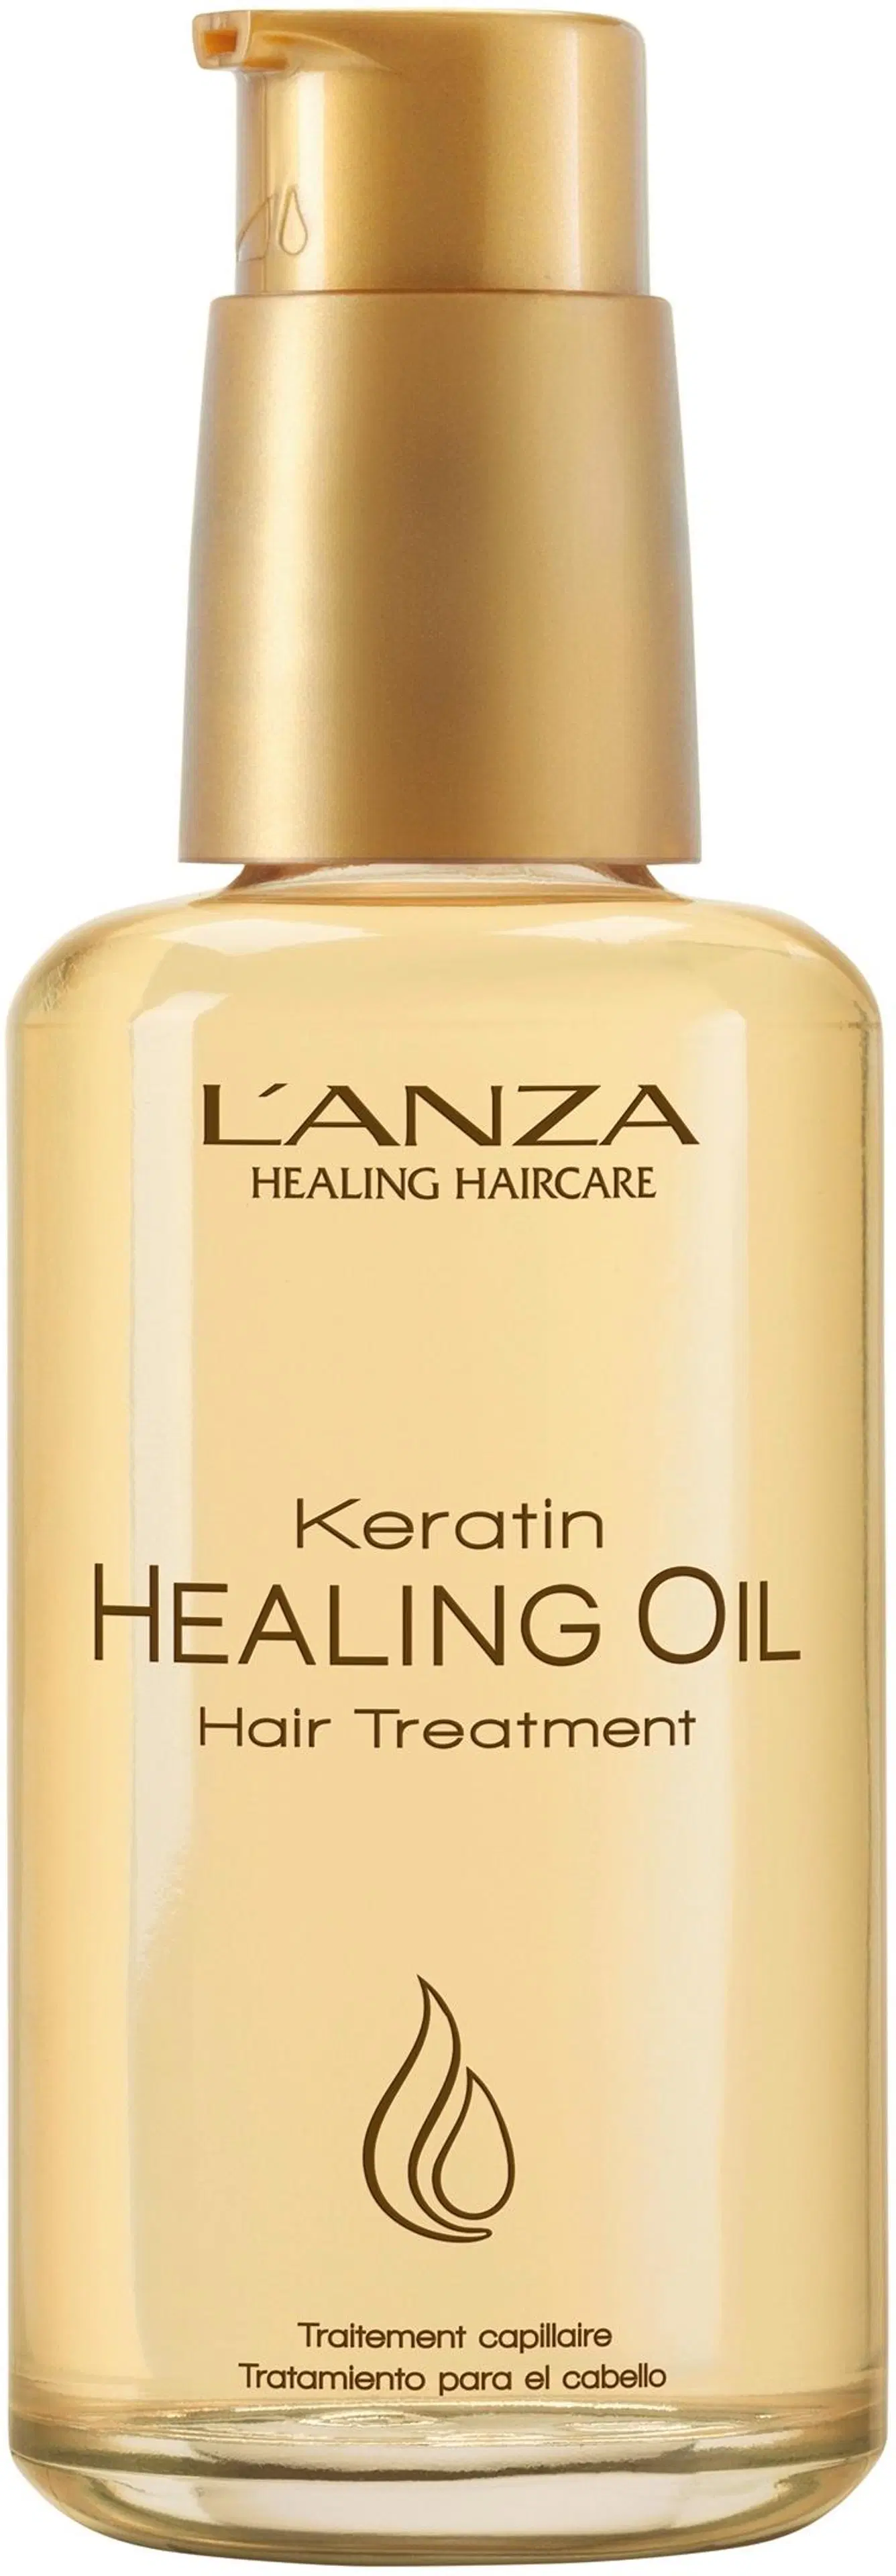 L´ANZA Keratin Healing Oil Hair Treatment hoitoöljy 100 ml